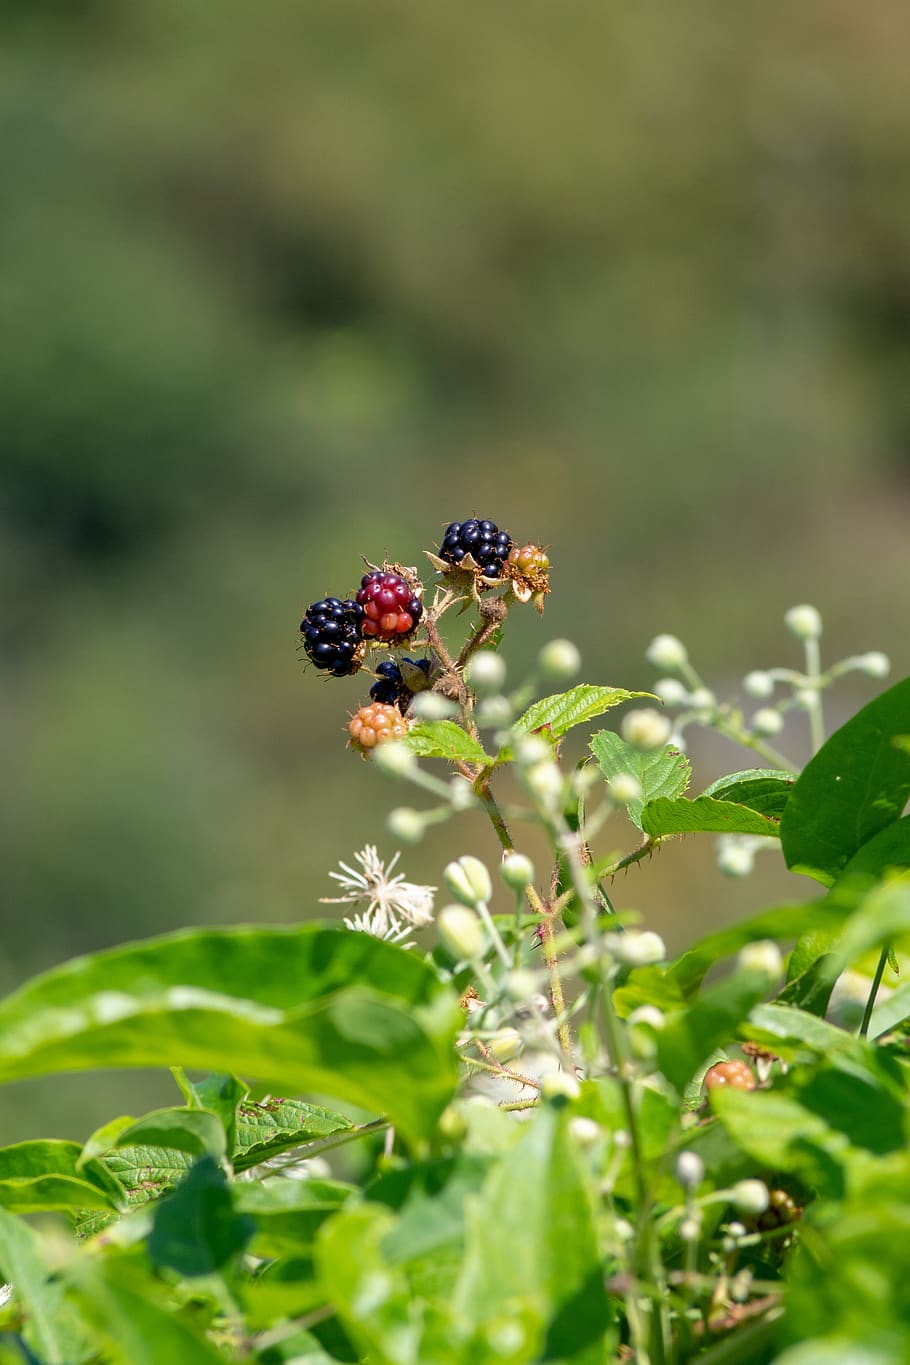 blackberry, semak, beri, daun, buah, belum matang, tanaman, invertebrata, serangga, kerapuhan